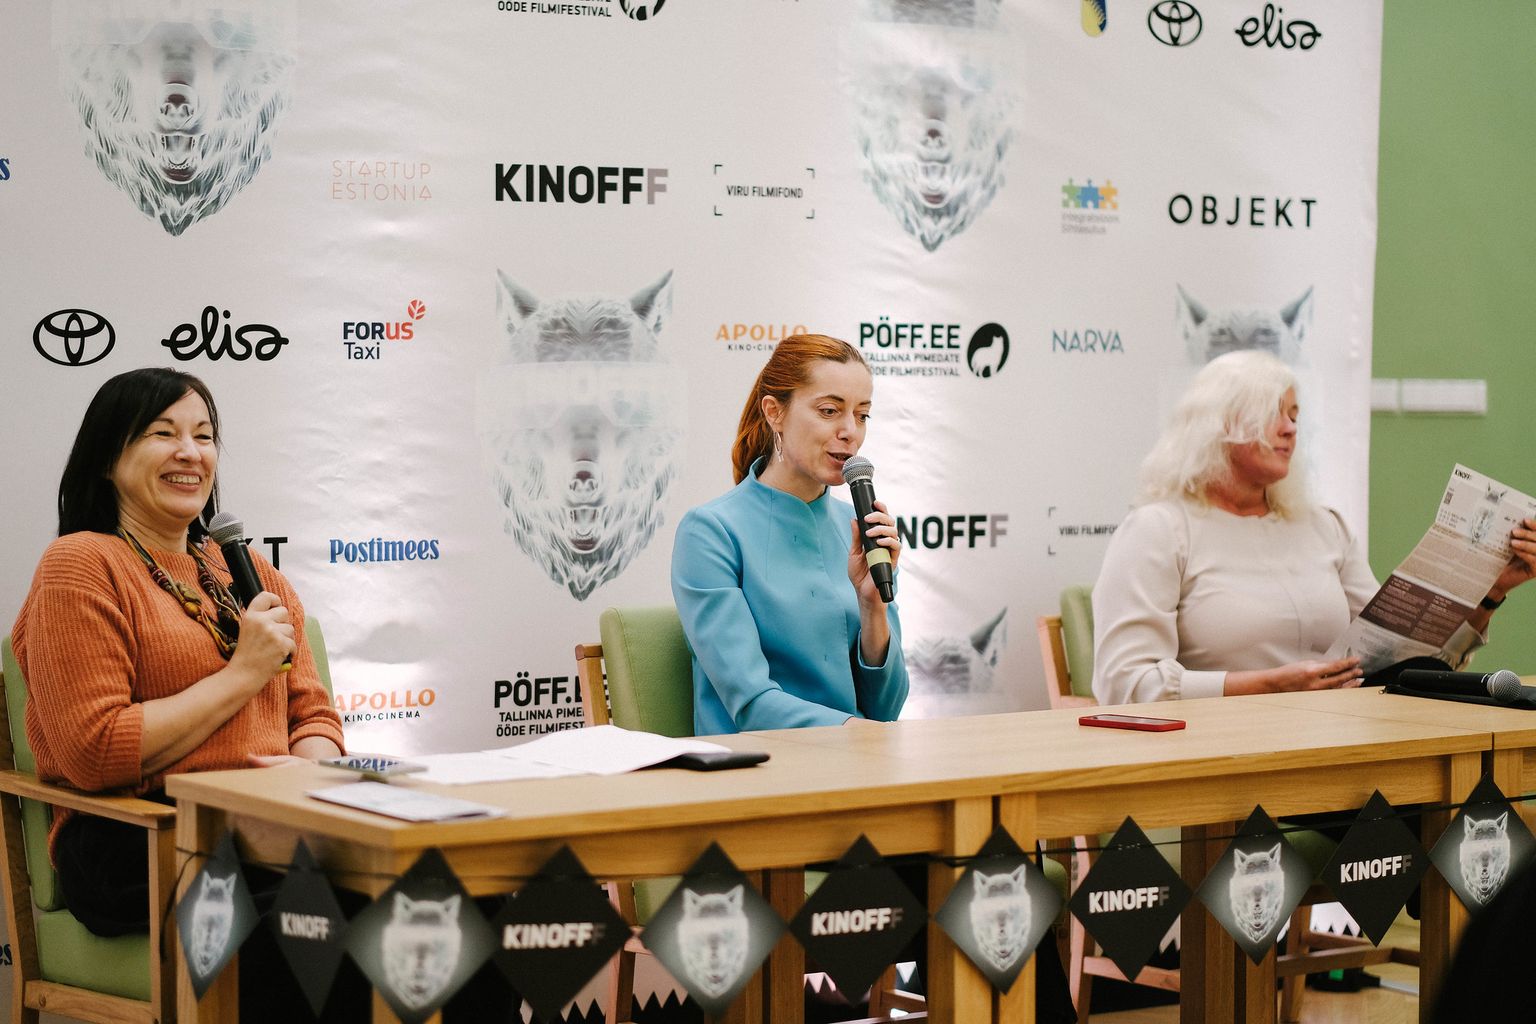 Наталья Маченене и Яна Будковская рассказали на пресс-конференции, что собрать программу международного кинофестиваля было нелегко, но они уверены, что зрители найдут в ней фильмы по своему вкусу.